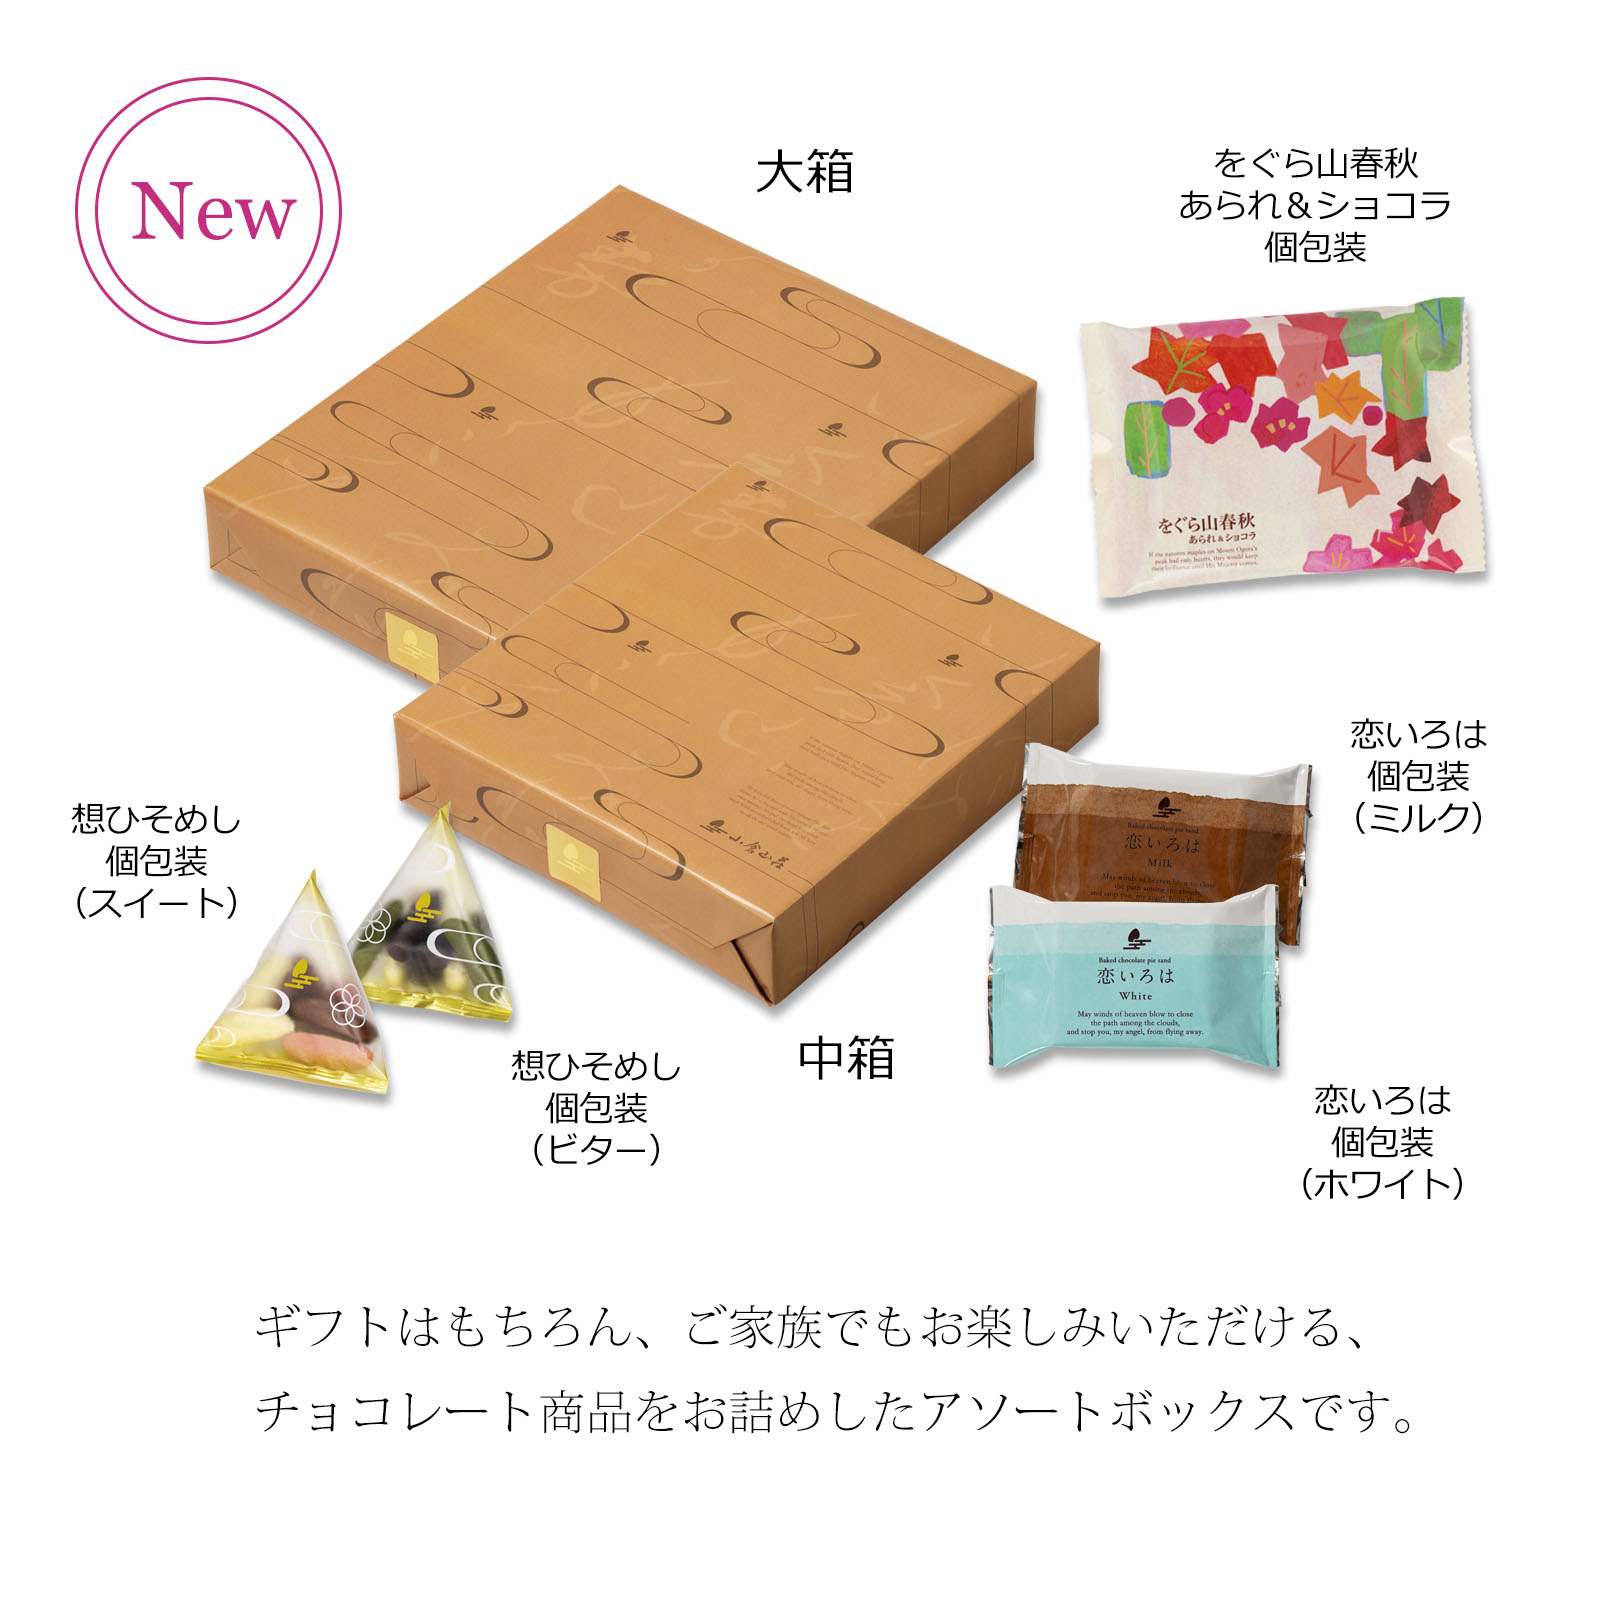 小倉山荘ショコラアソート 大箱